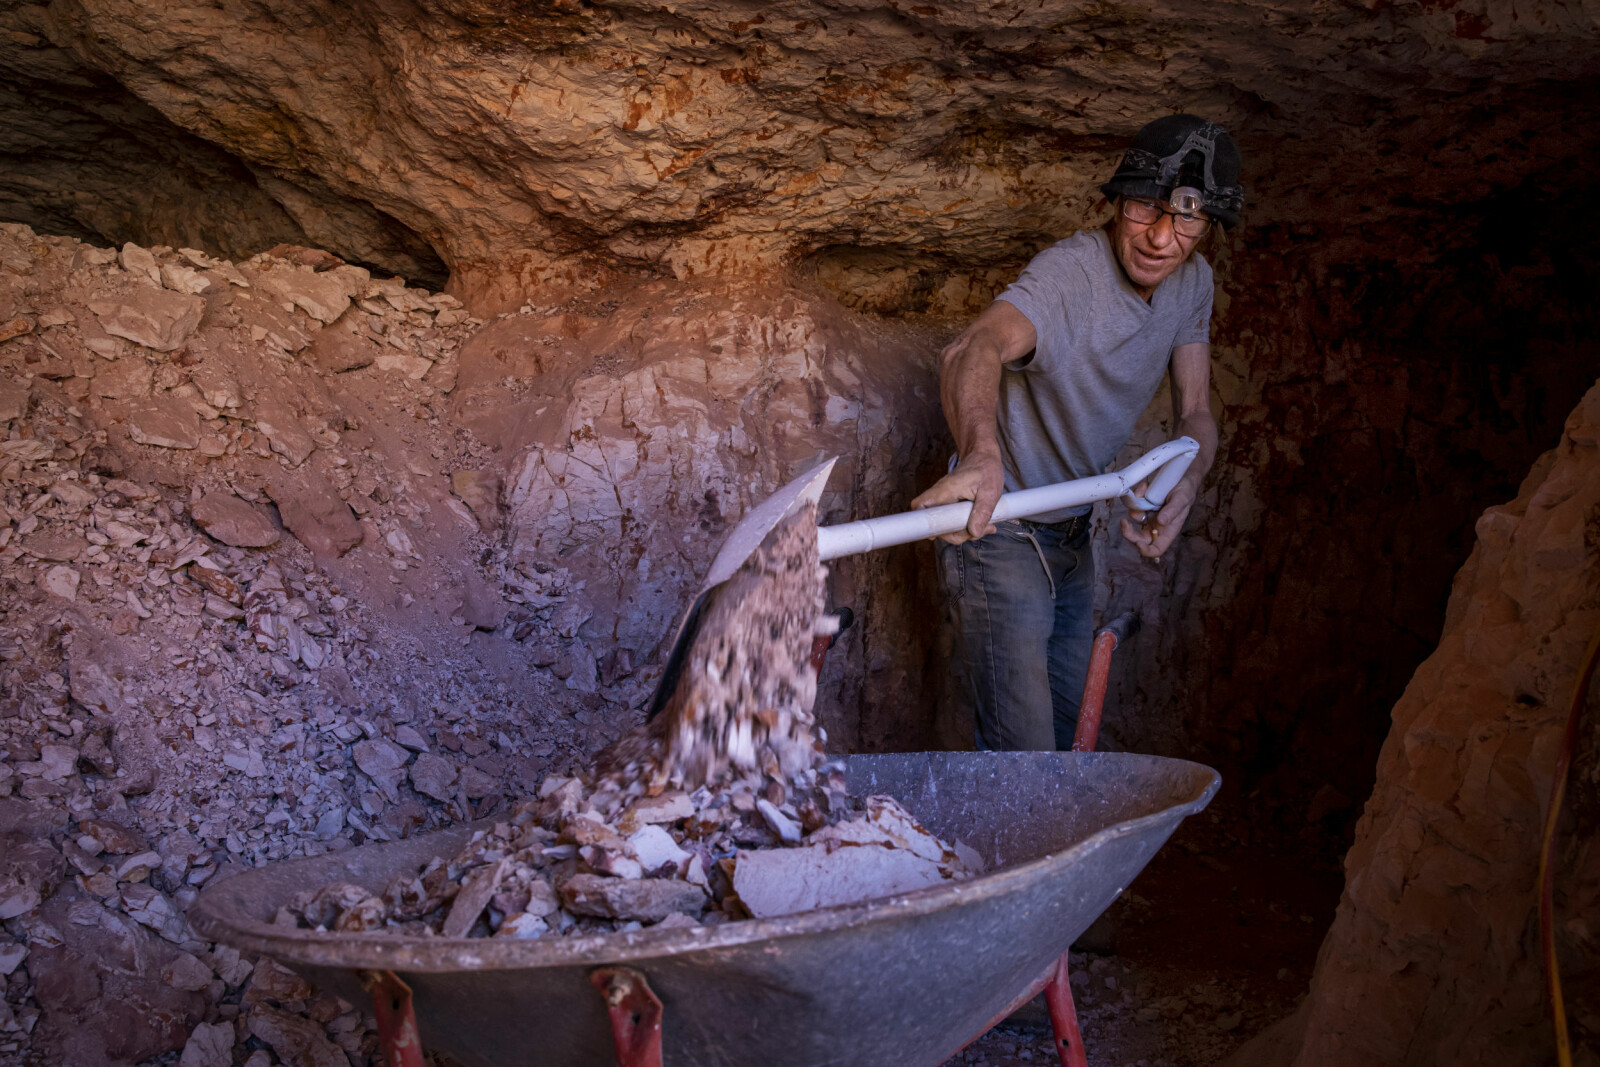 <b>SKJERPET:</b> Rusty (64) graver daglig og hakker etter opaler på sitt skjerp dypt inne i ørkenen i South Australia. 